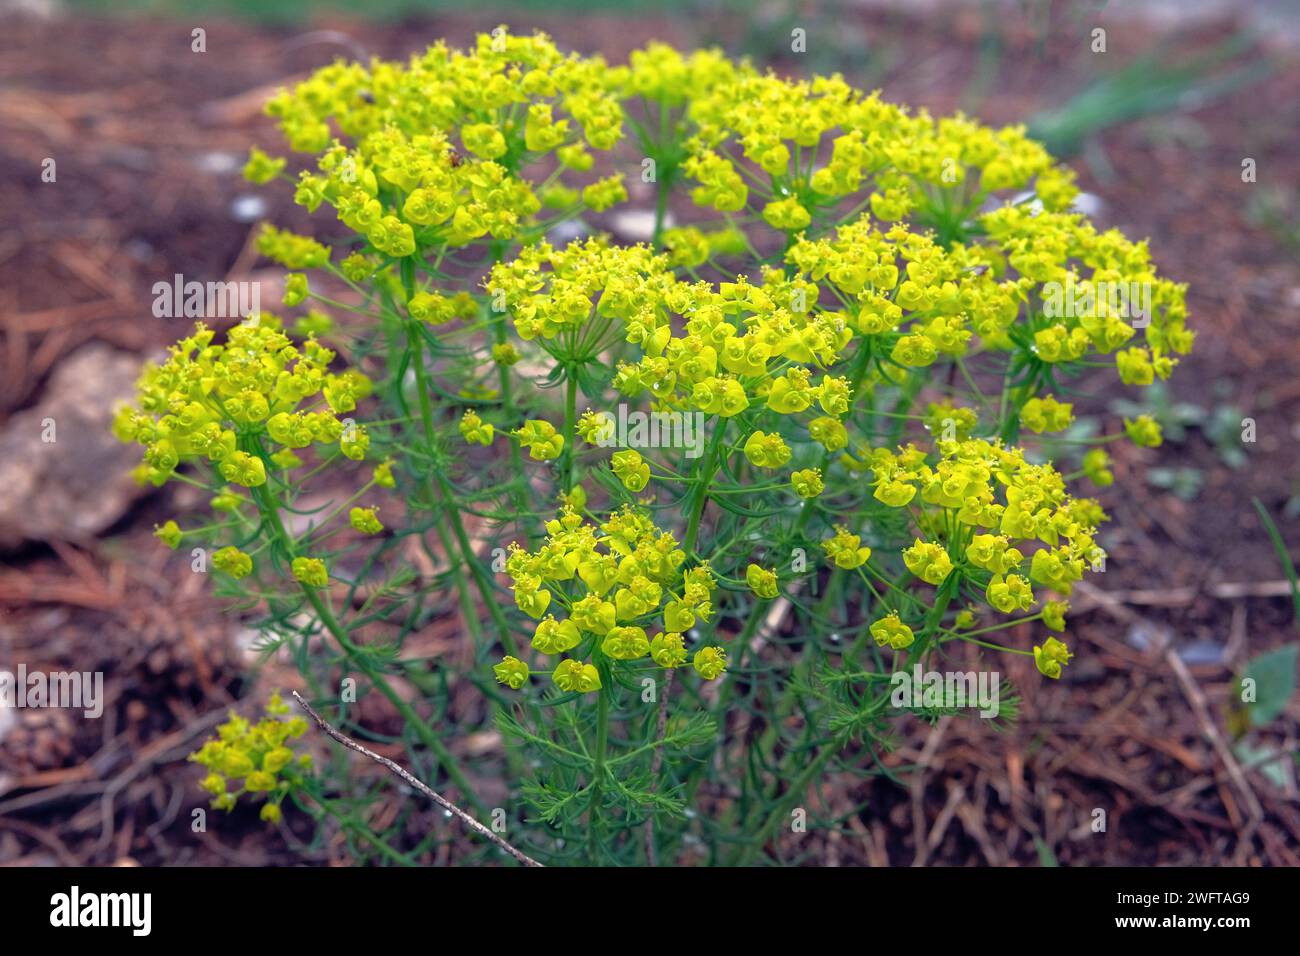 Euphorbia cyparissies. Plante vivace toxique de la famille de l'asphyxie. Occasionnellement utilisé comme plante médicinale. Fleurs parfumées, les pétales sont jaunis Banque D'Images